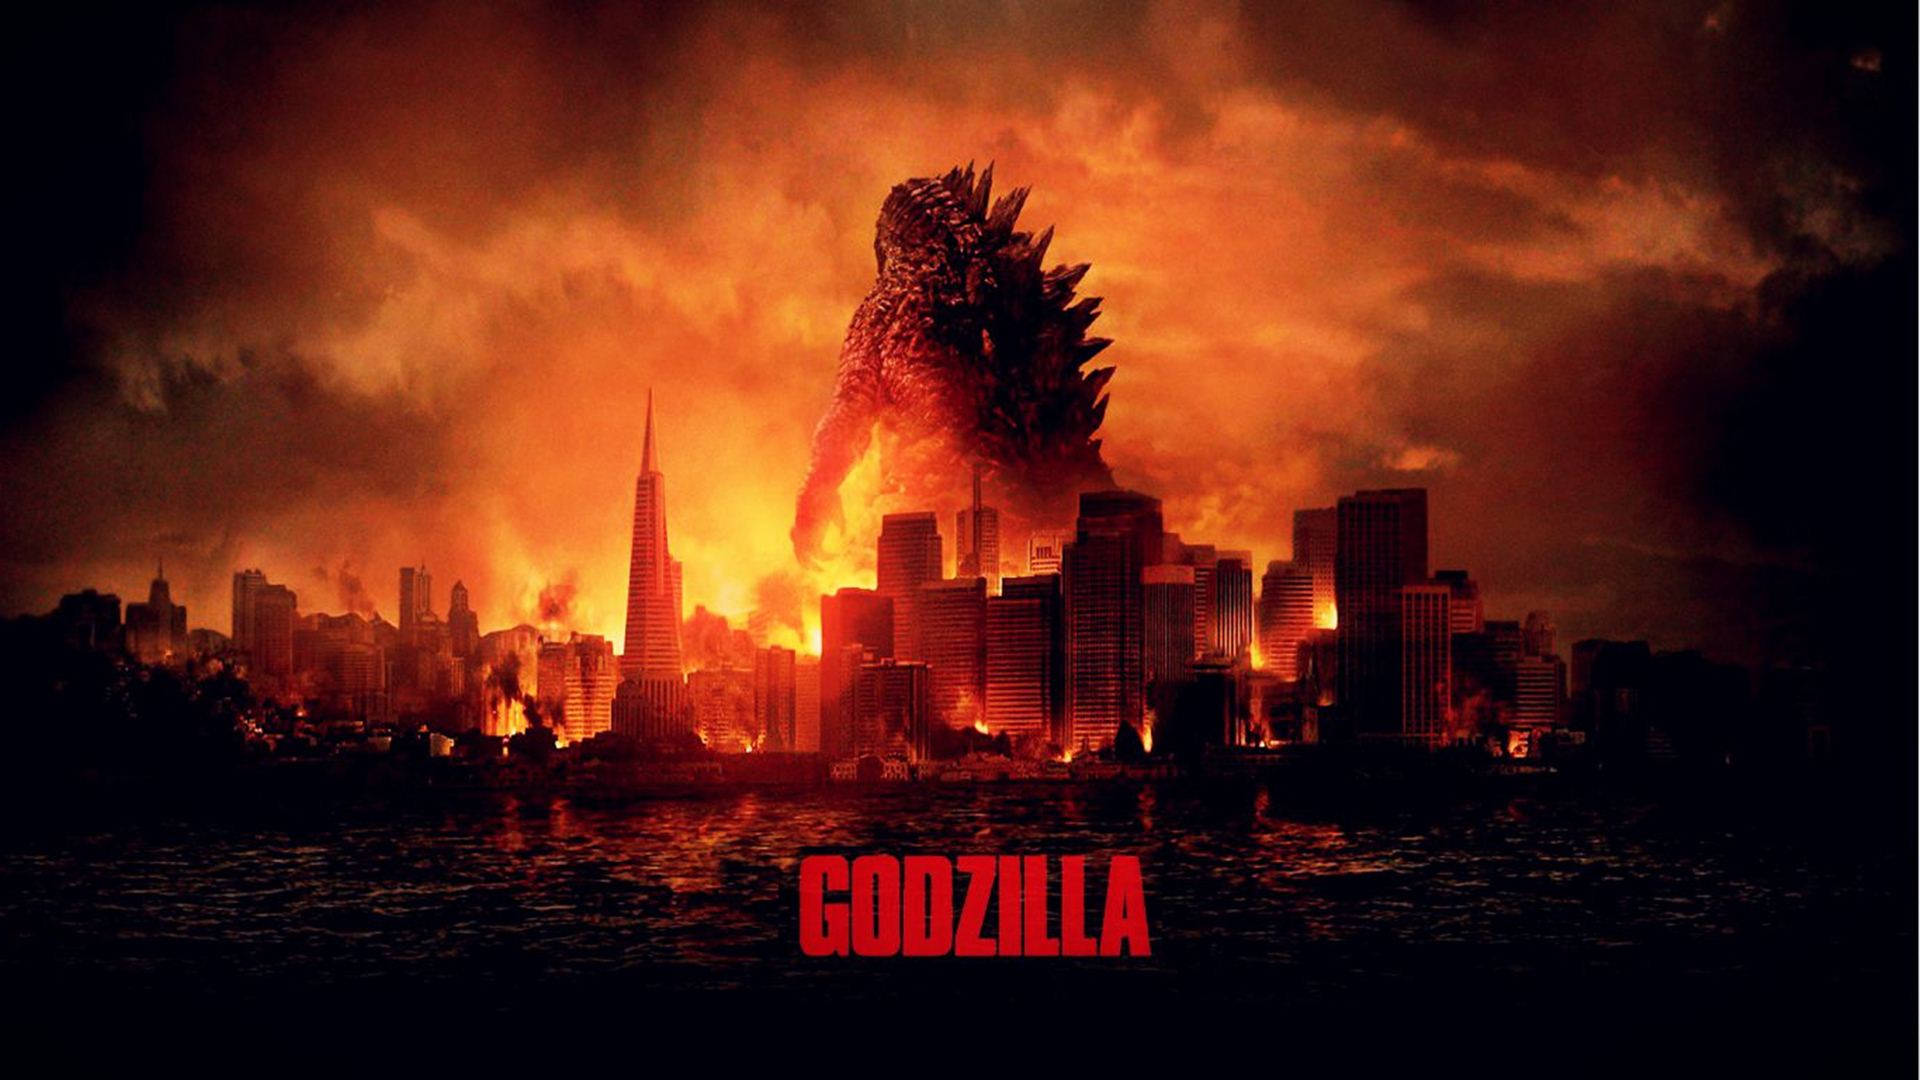 Godzilla 1920X1080 Wallpaper and Background Image